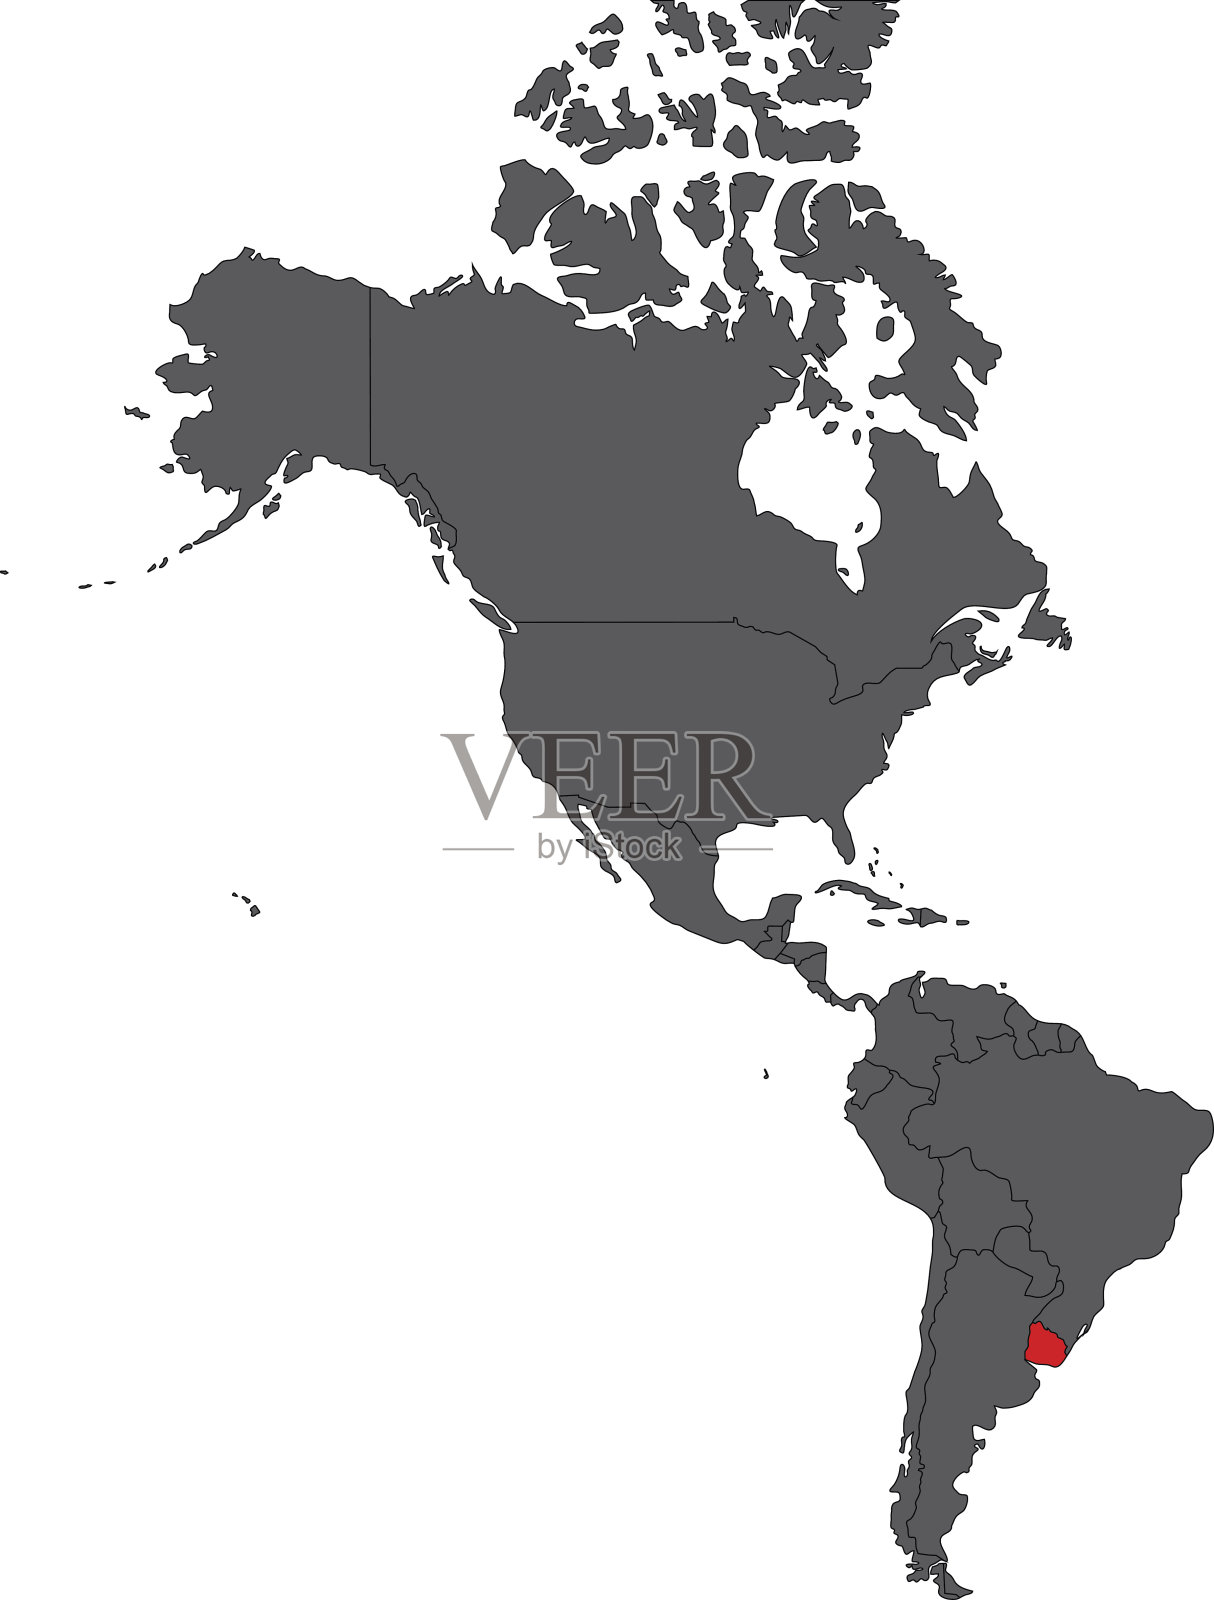 乌拉圭独立地图 库存例证. 插画 包括有 图象, 背包, 例证, 映射, 国家, 等高, 国家（地区） - 188539711